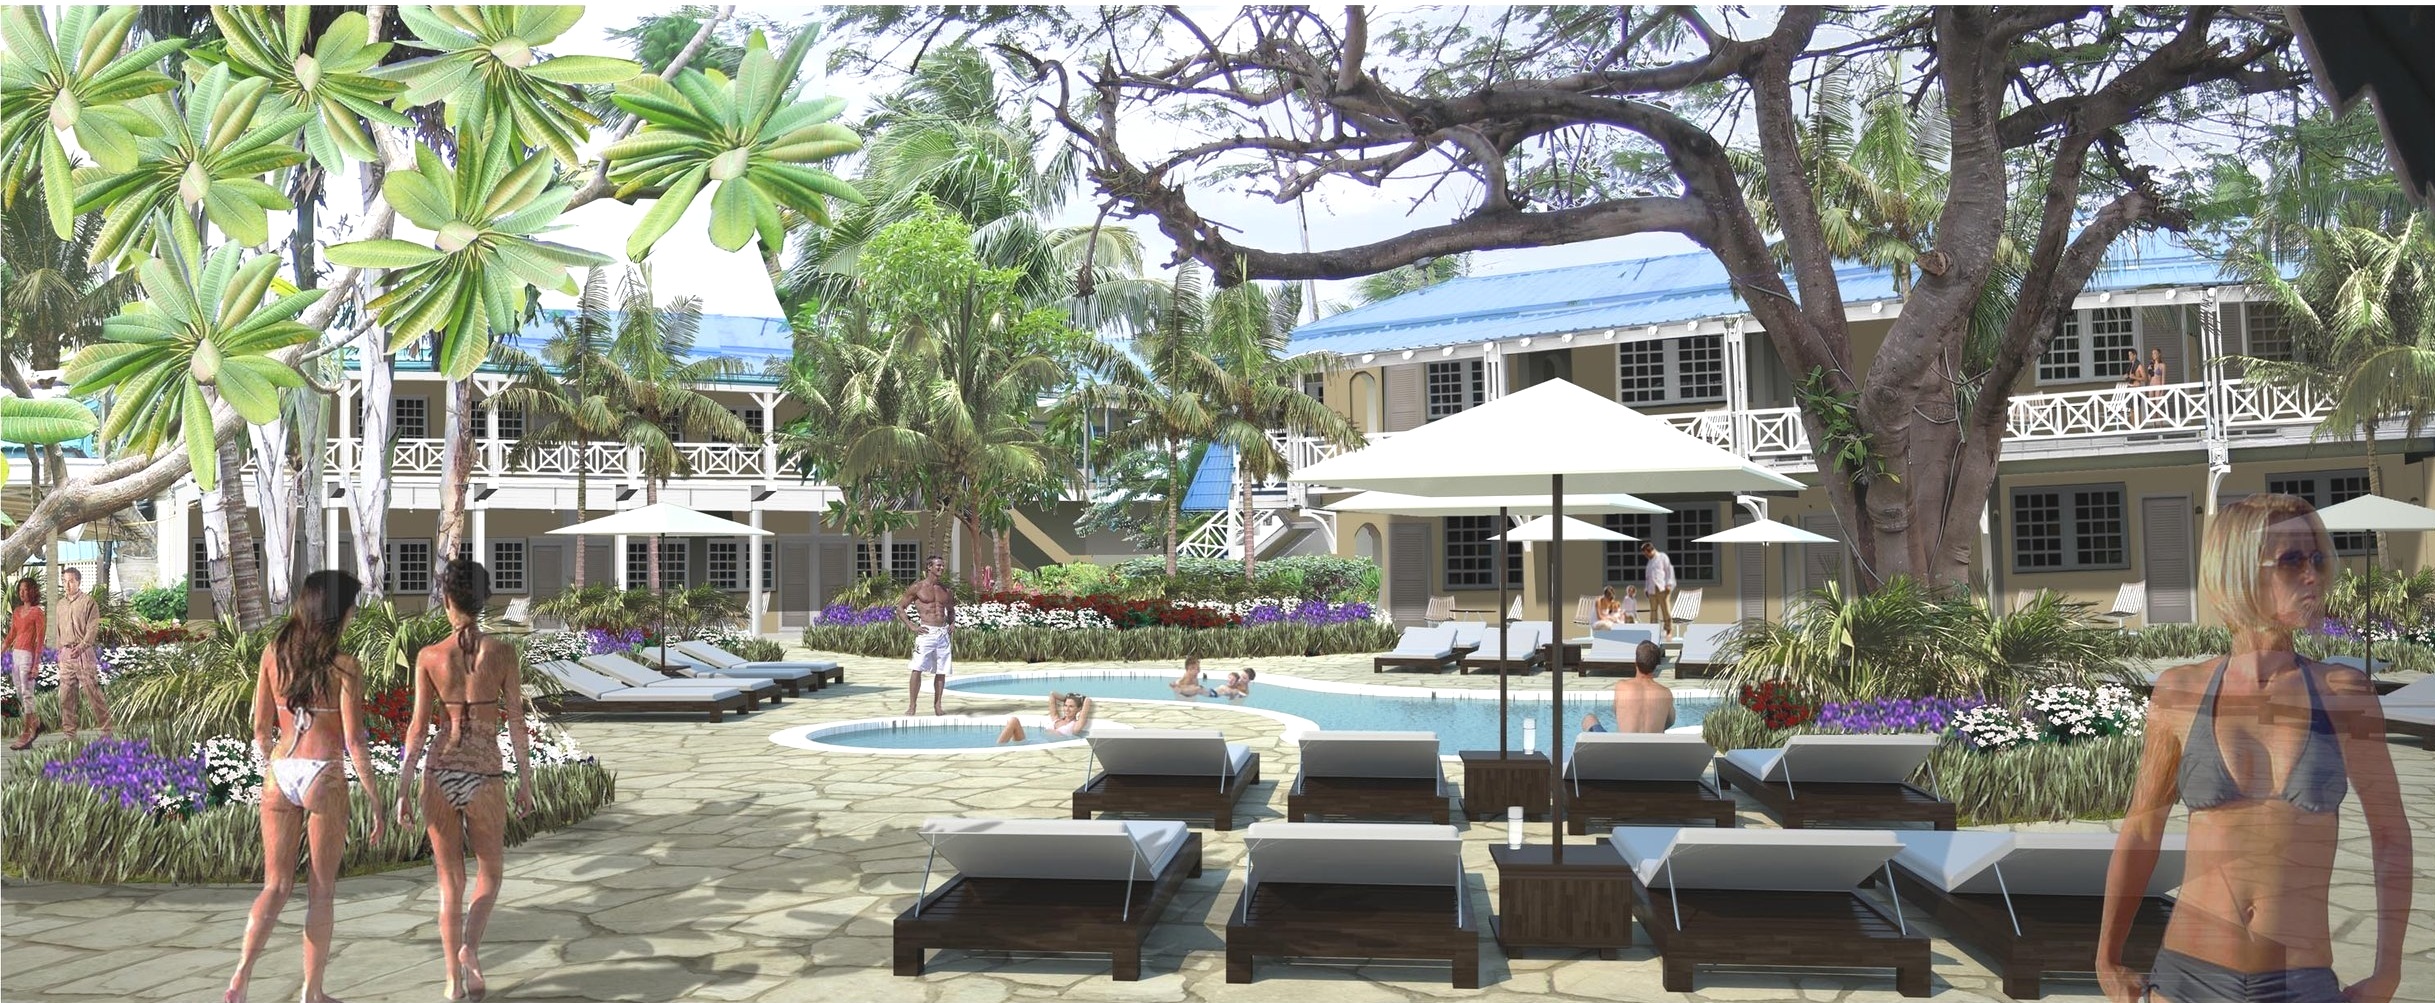   Full Service Hotel &amp; Resort Development    Learn More  